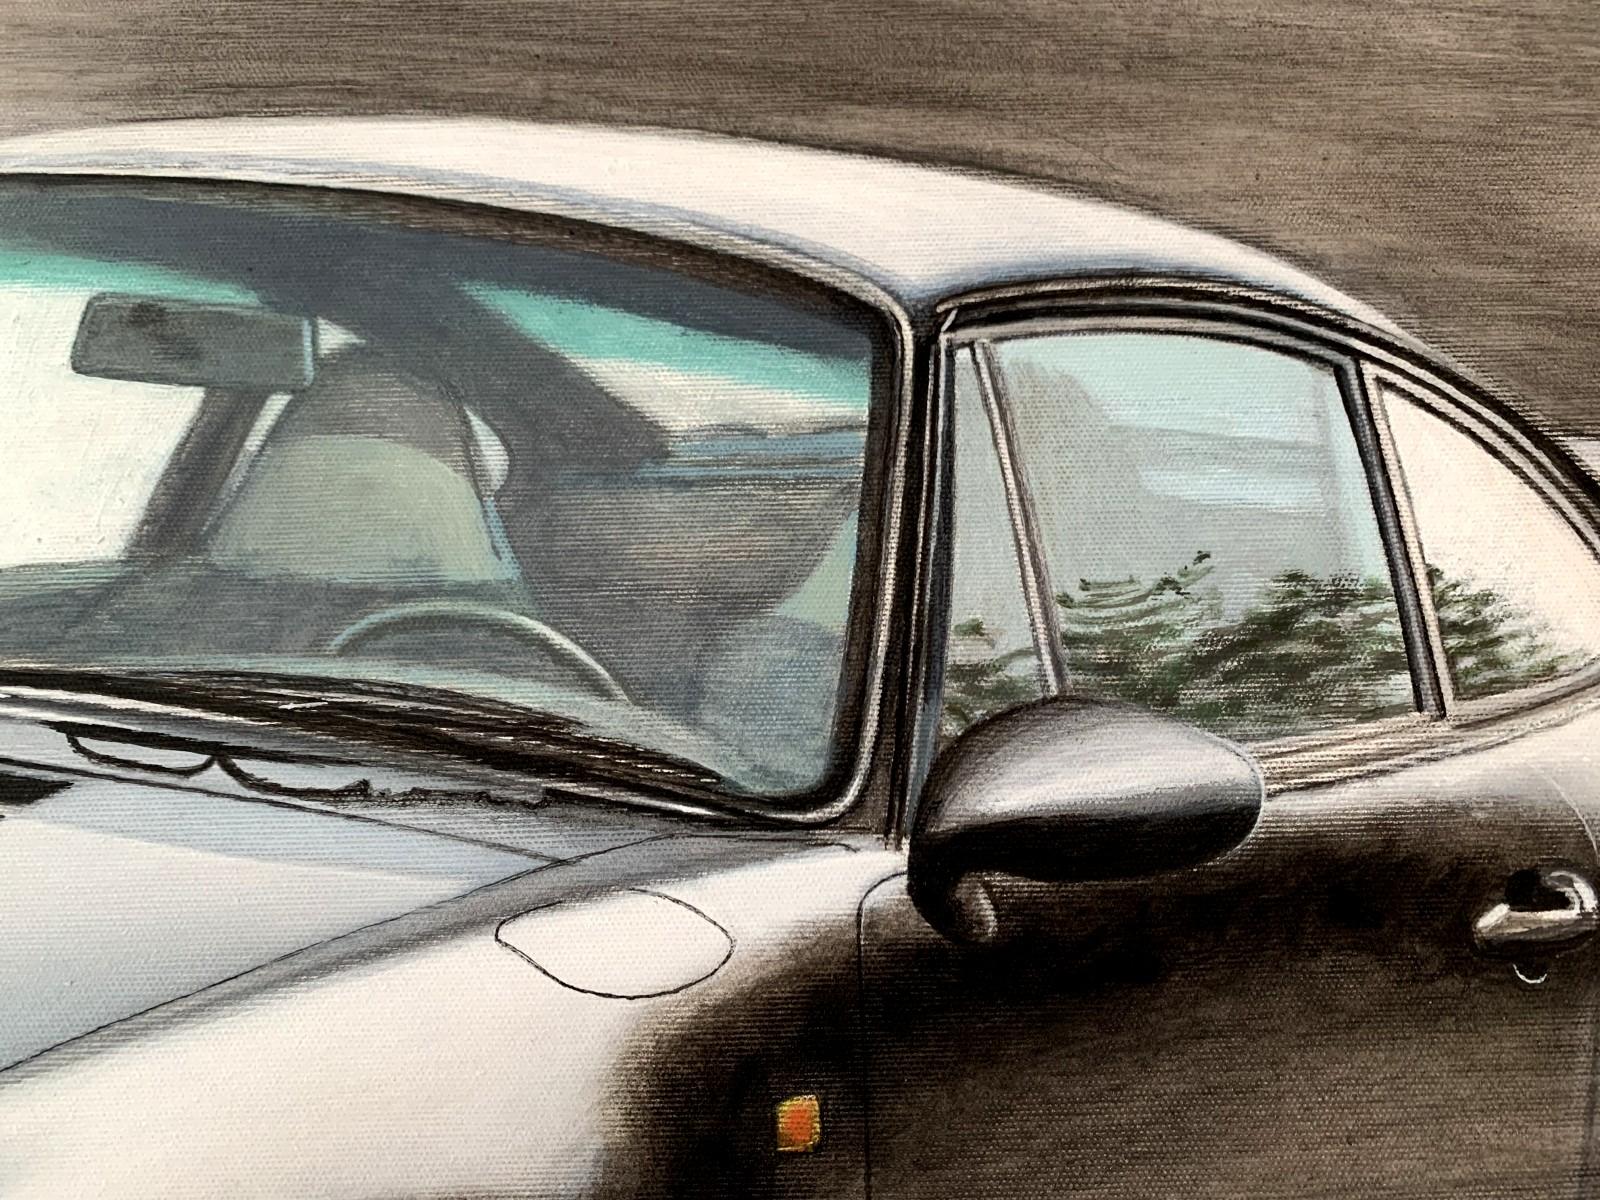 Acryl auf Leinwand zeitgenössische figurative Malerei von Michal Wojtysiak. Das Kunstwerk zeigt ein Porsche-Auto im realistischen Stil. Die Farben sind meist grau. 

MICHAŁ WOJTYSIAK (ur. 1984)
Absolvent der Akademie der Schönen Künste in Łódź,